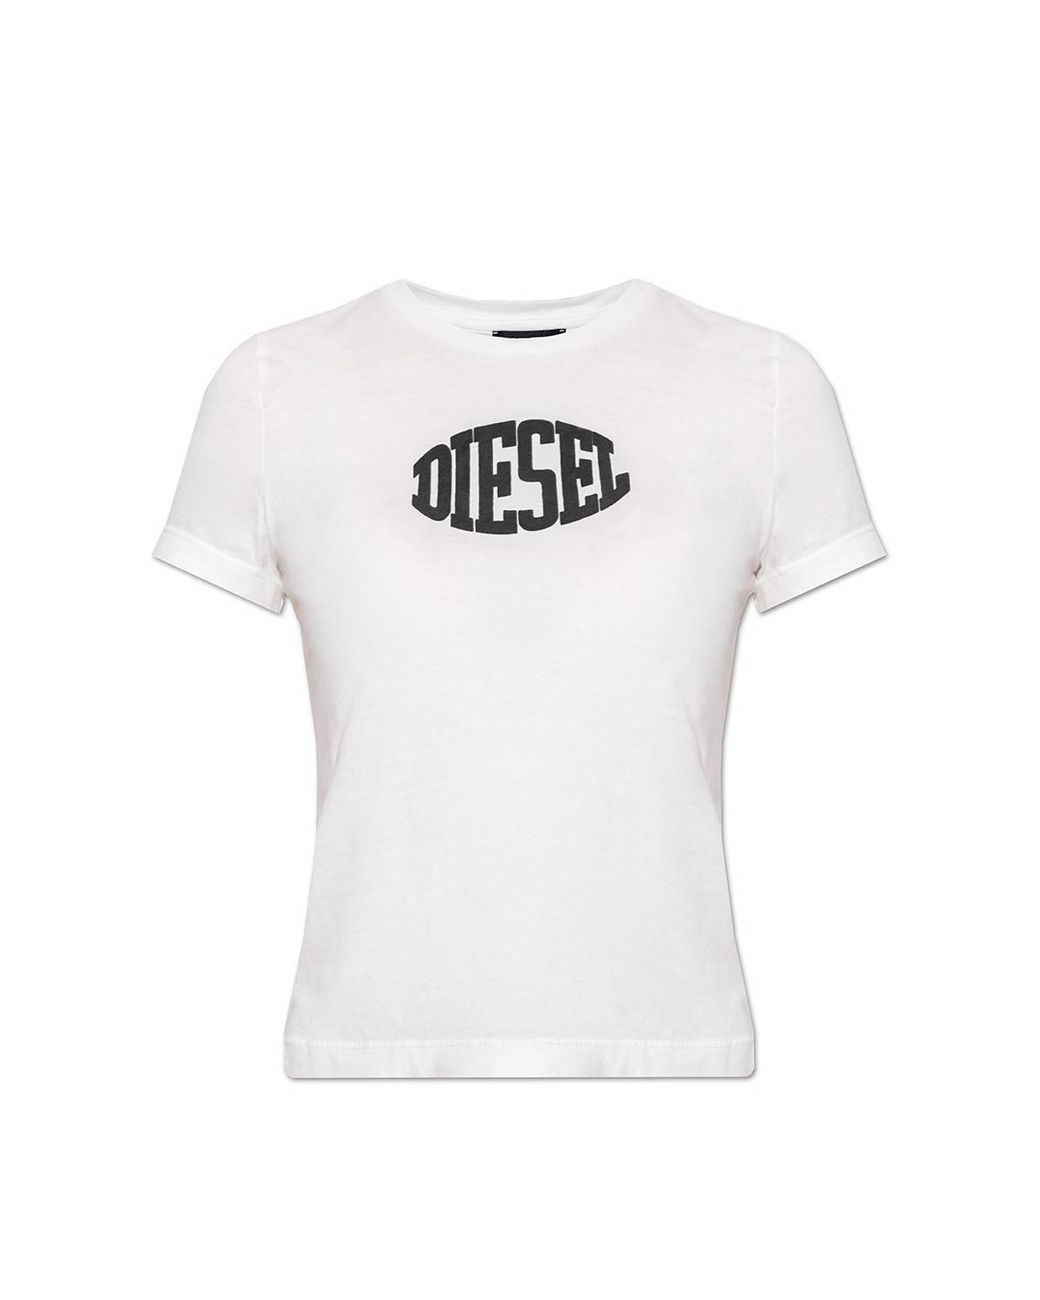 DIESEL 't-sli-e2' T-shirt in White | Lyst